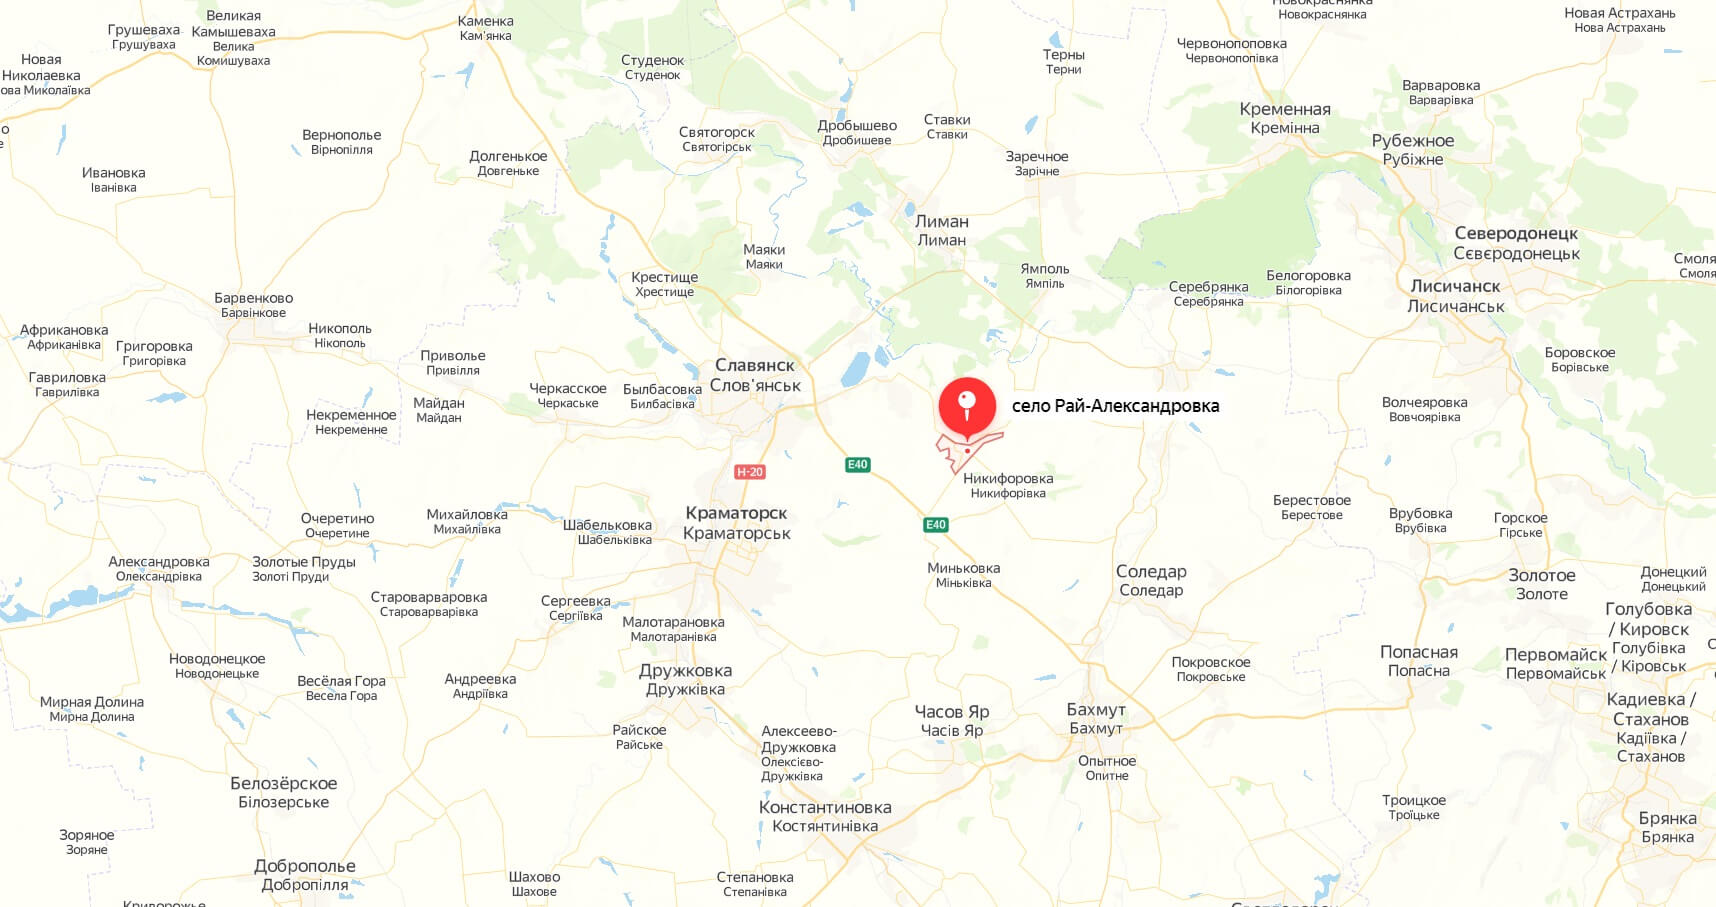 Никольское белгородская область граница с украиной